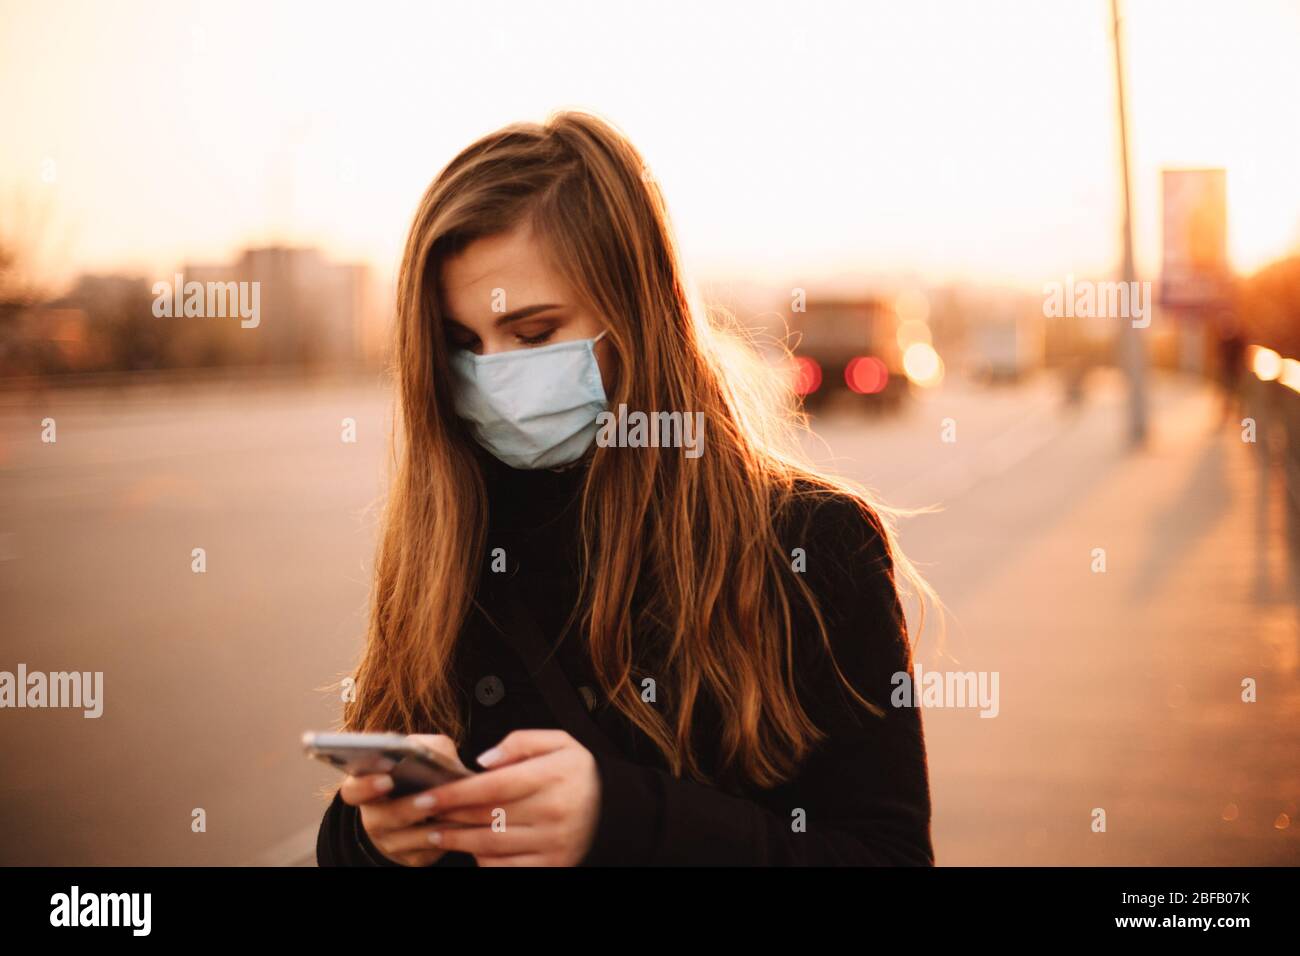 Giovane donna seria che indossa la maschera protettiva facciale medica utilizzando lo smartphone mentre cammina sul marciapiede vuoto in città al tramonto Foto Stock